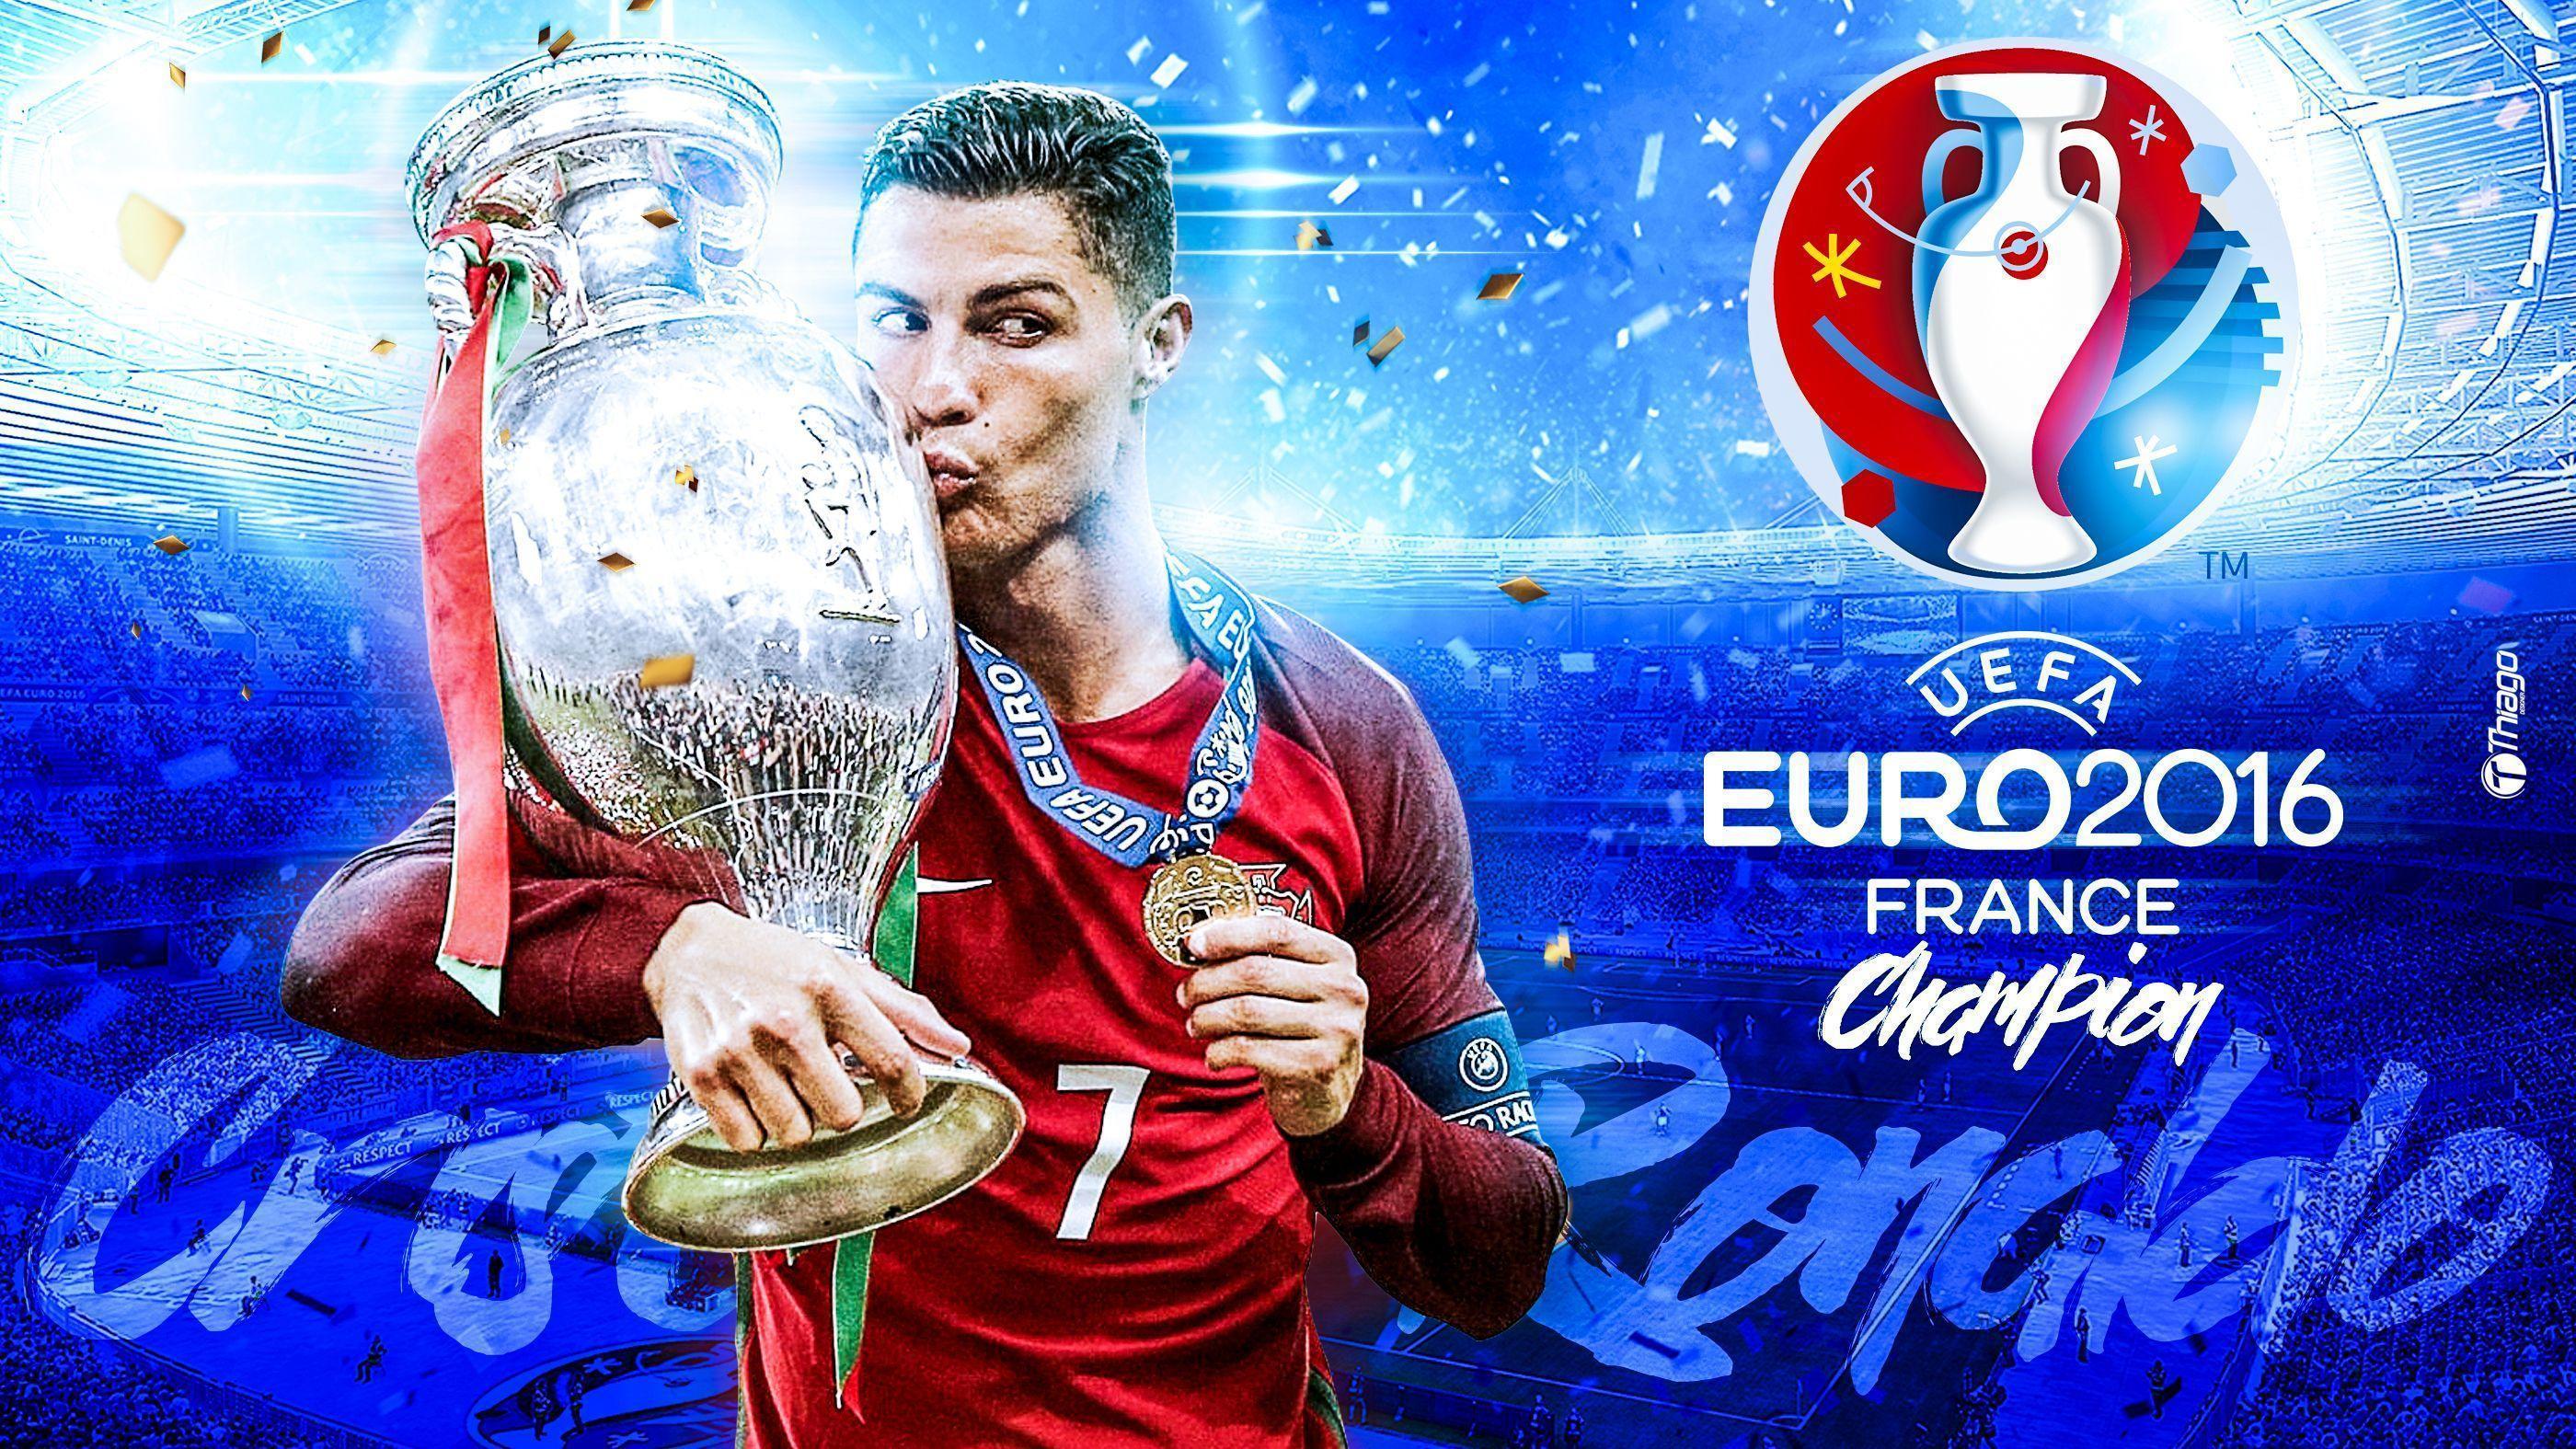 Cristiano Ronaldo Euro 2016 Champion wallpaper